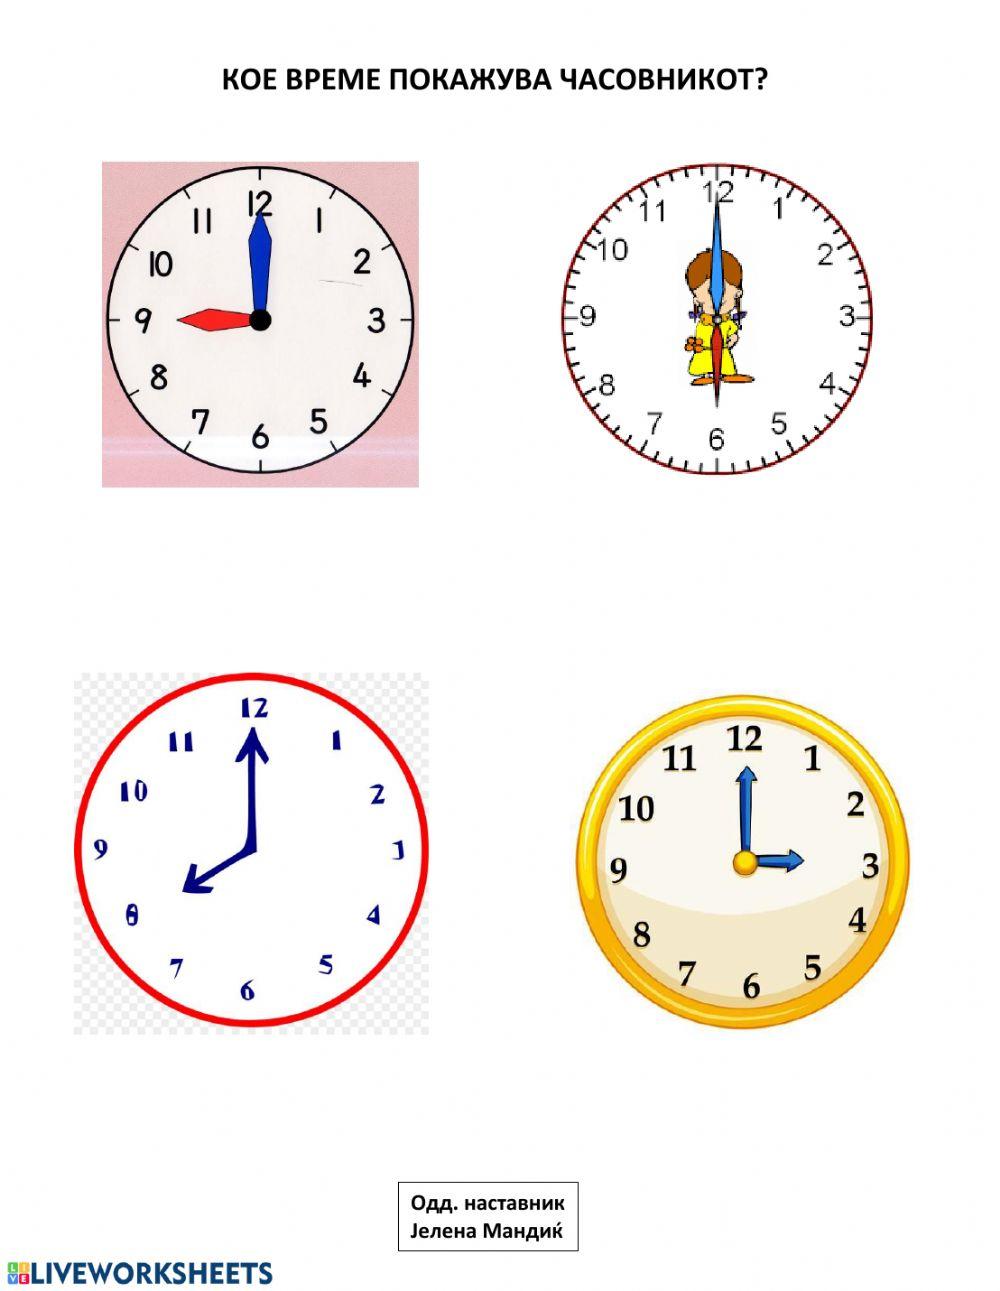 Кое време покажува часовникот?